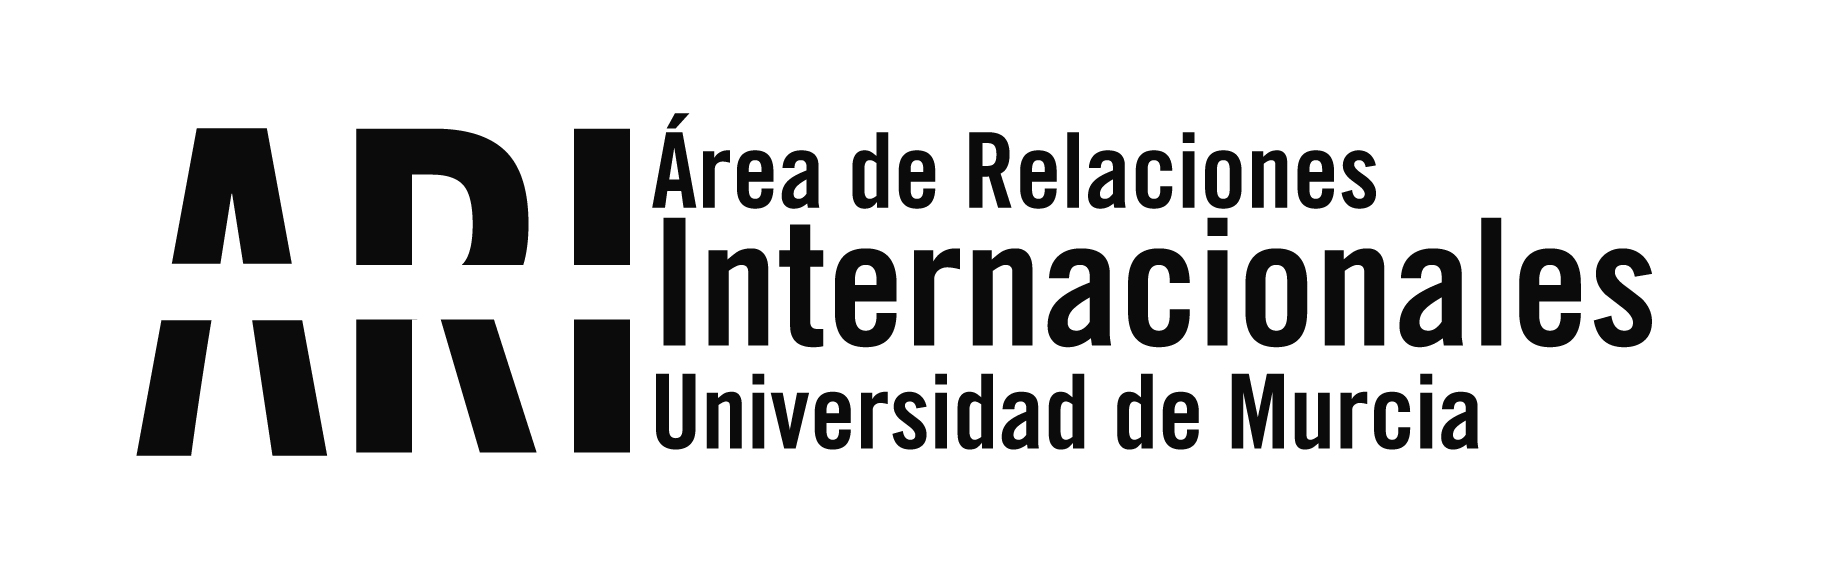 20180419 Jornadas CRUE Inter y Coop UCM Madrid - Eventos - Área de Relaciones Internacionales